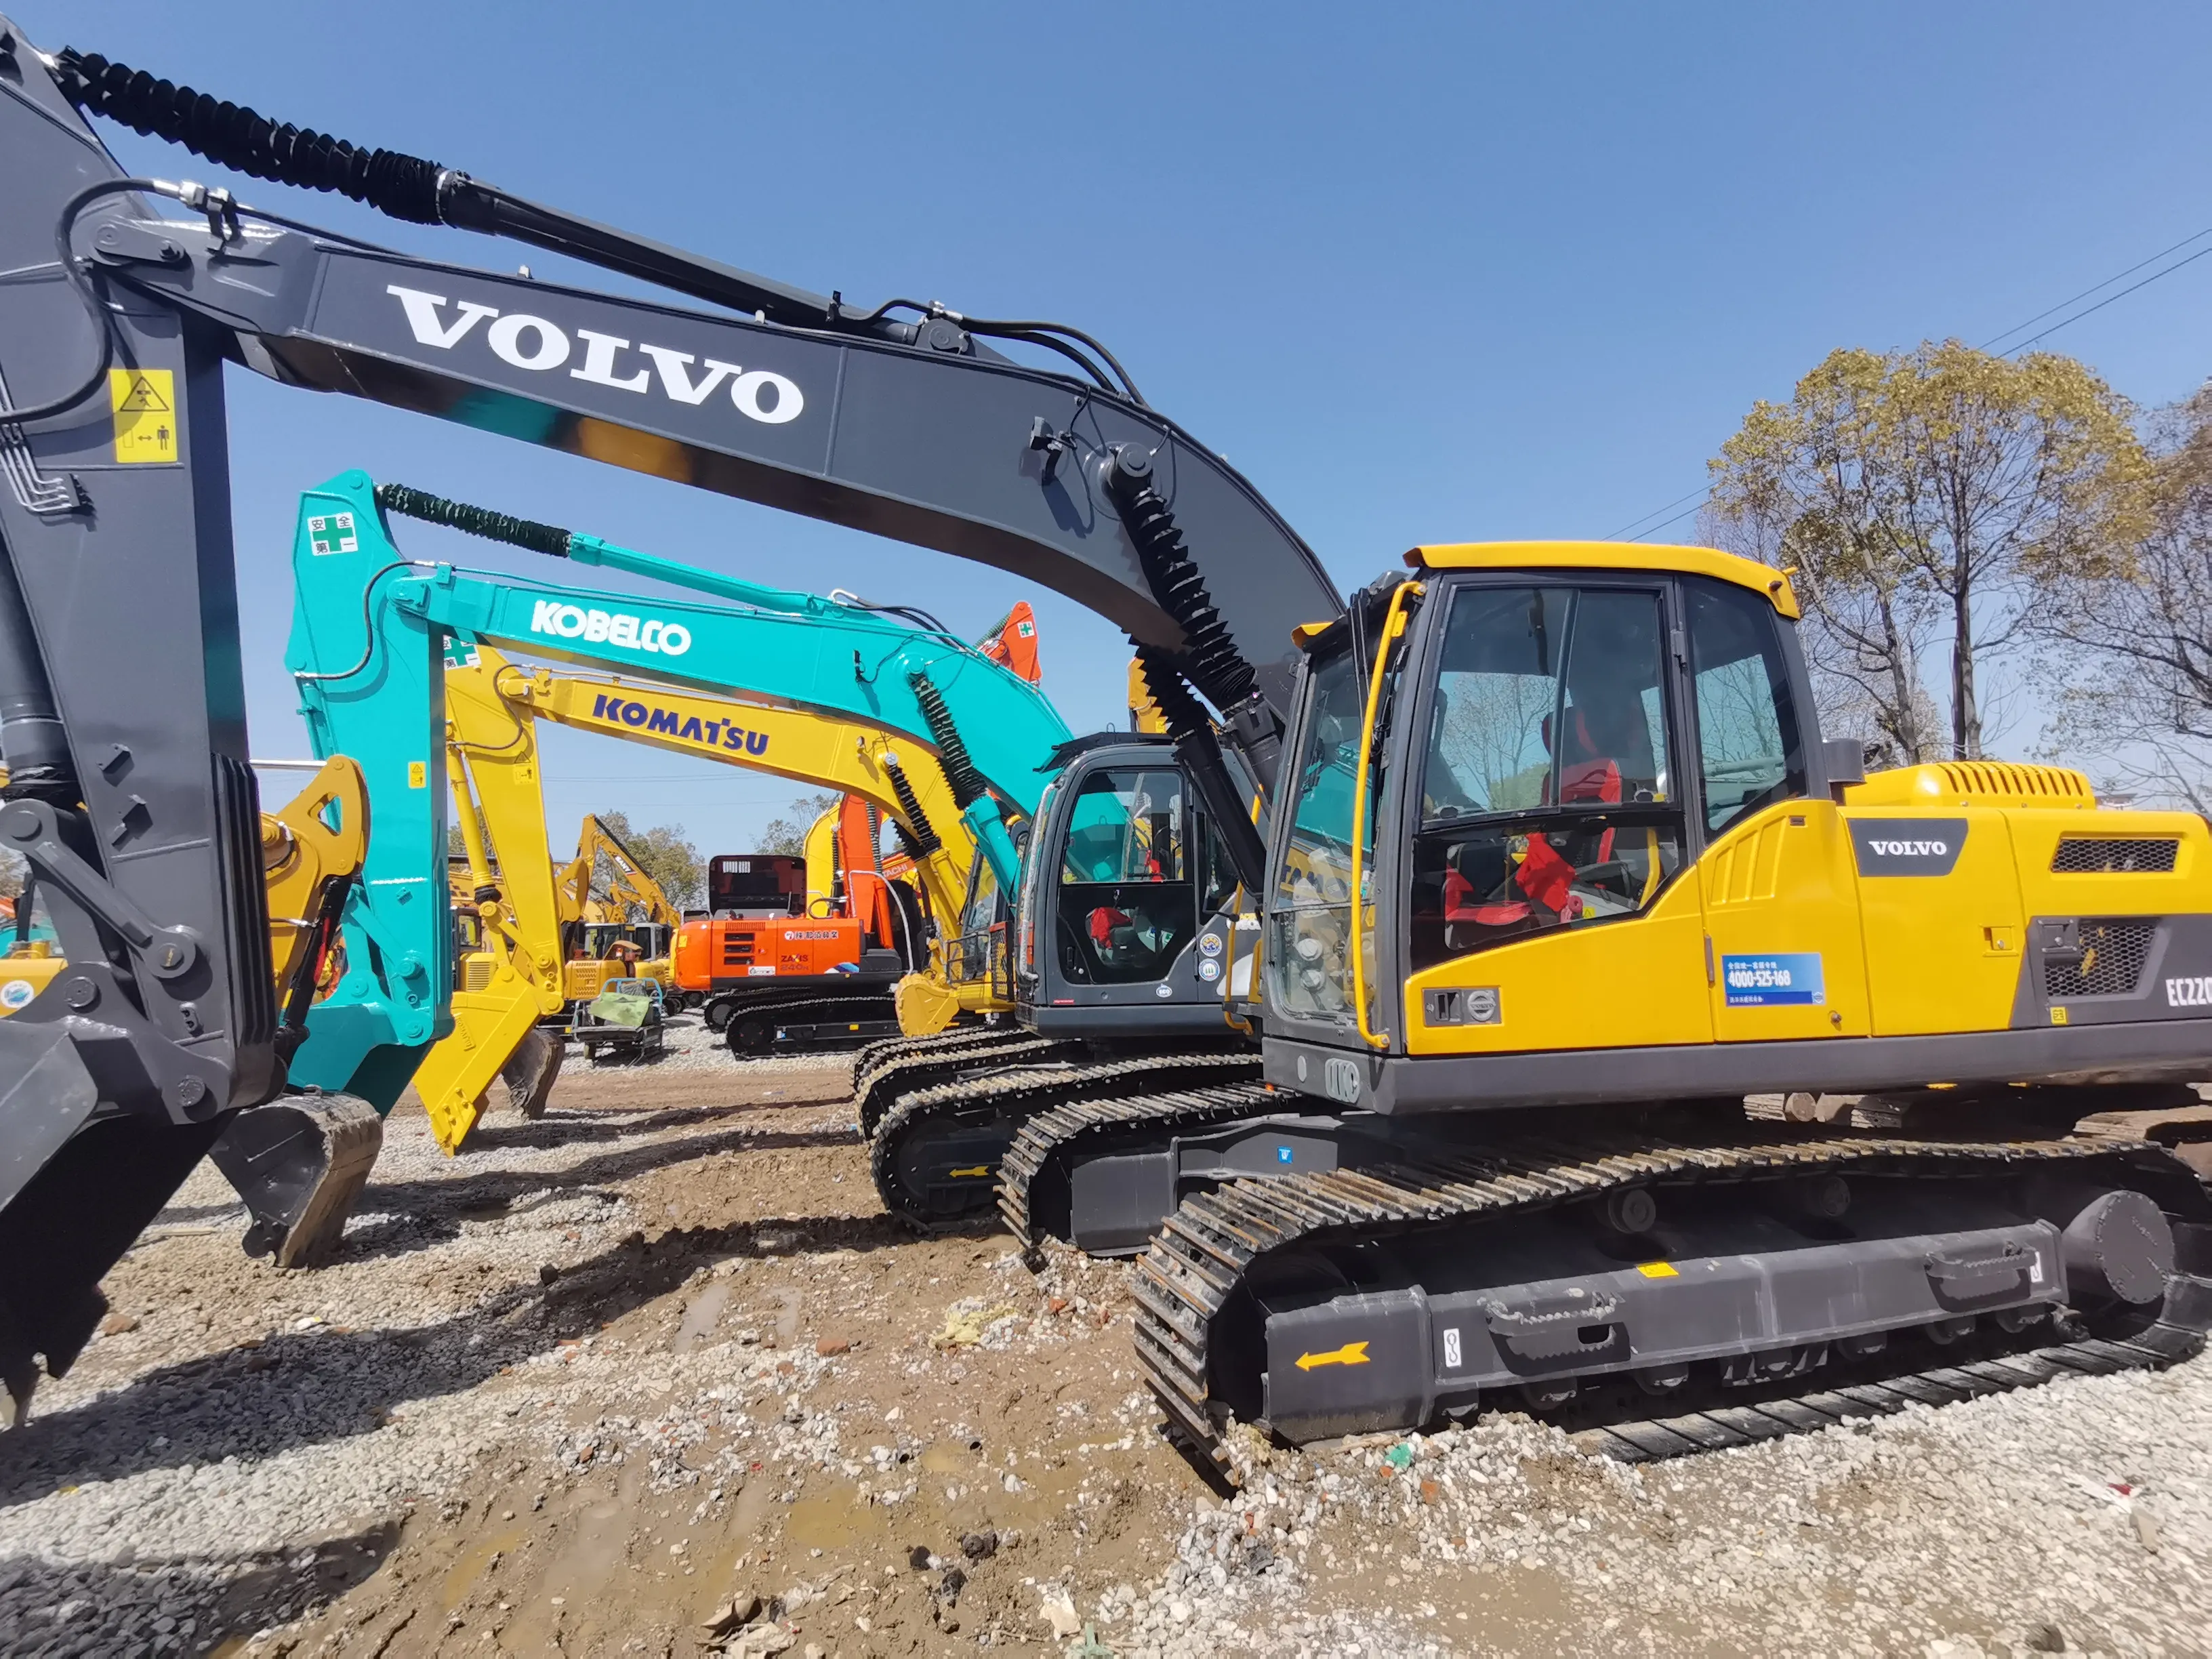 Usato Volvo cingolato escavatore 20t 22t usato cingolo scavatore, di alta qualità e vendita calda, Volvo escavatore